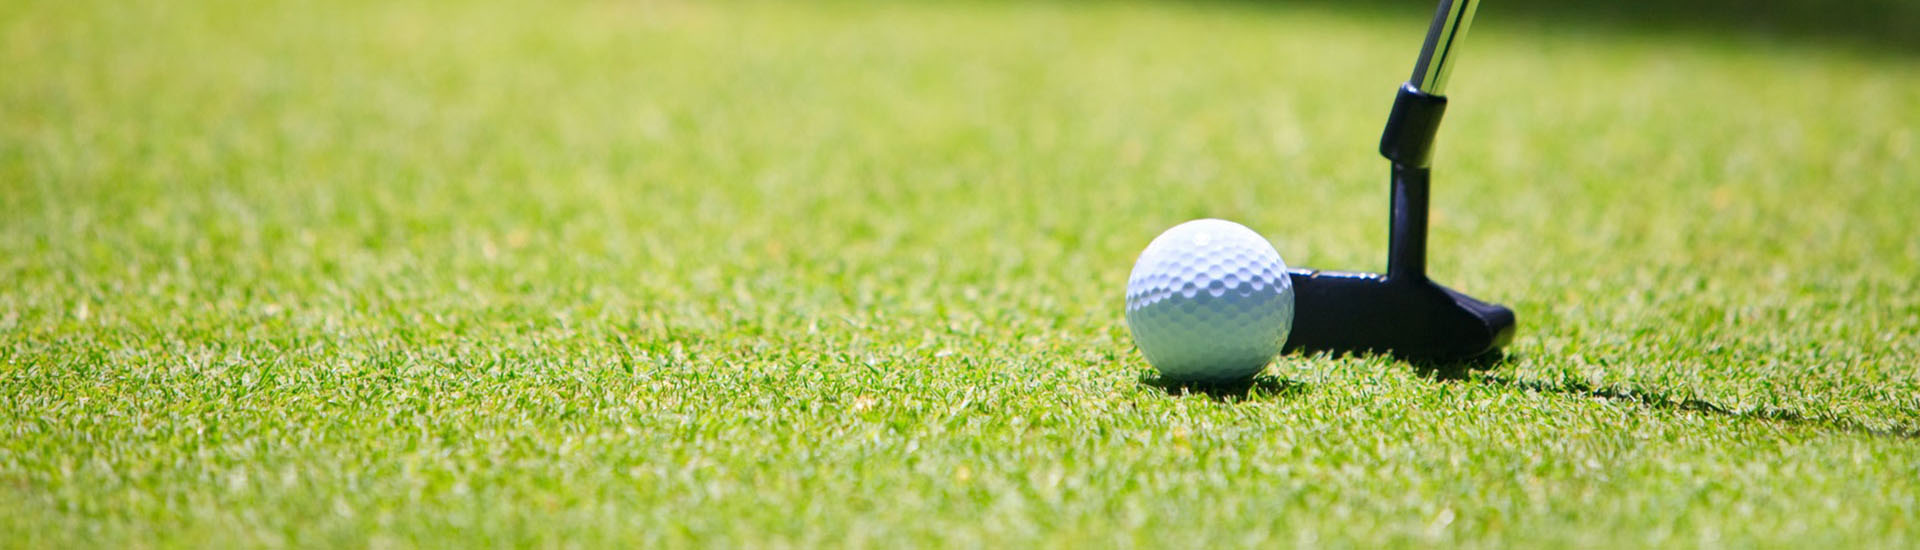 Artificial Grass for Golf, Golf Turf